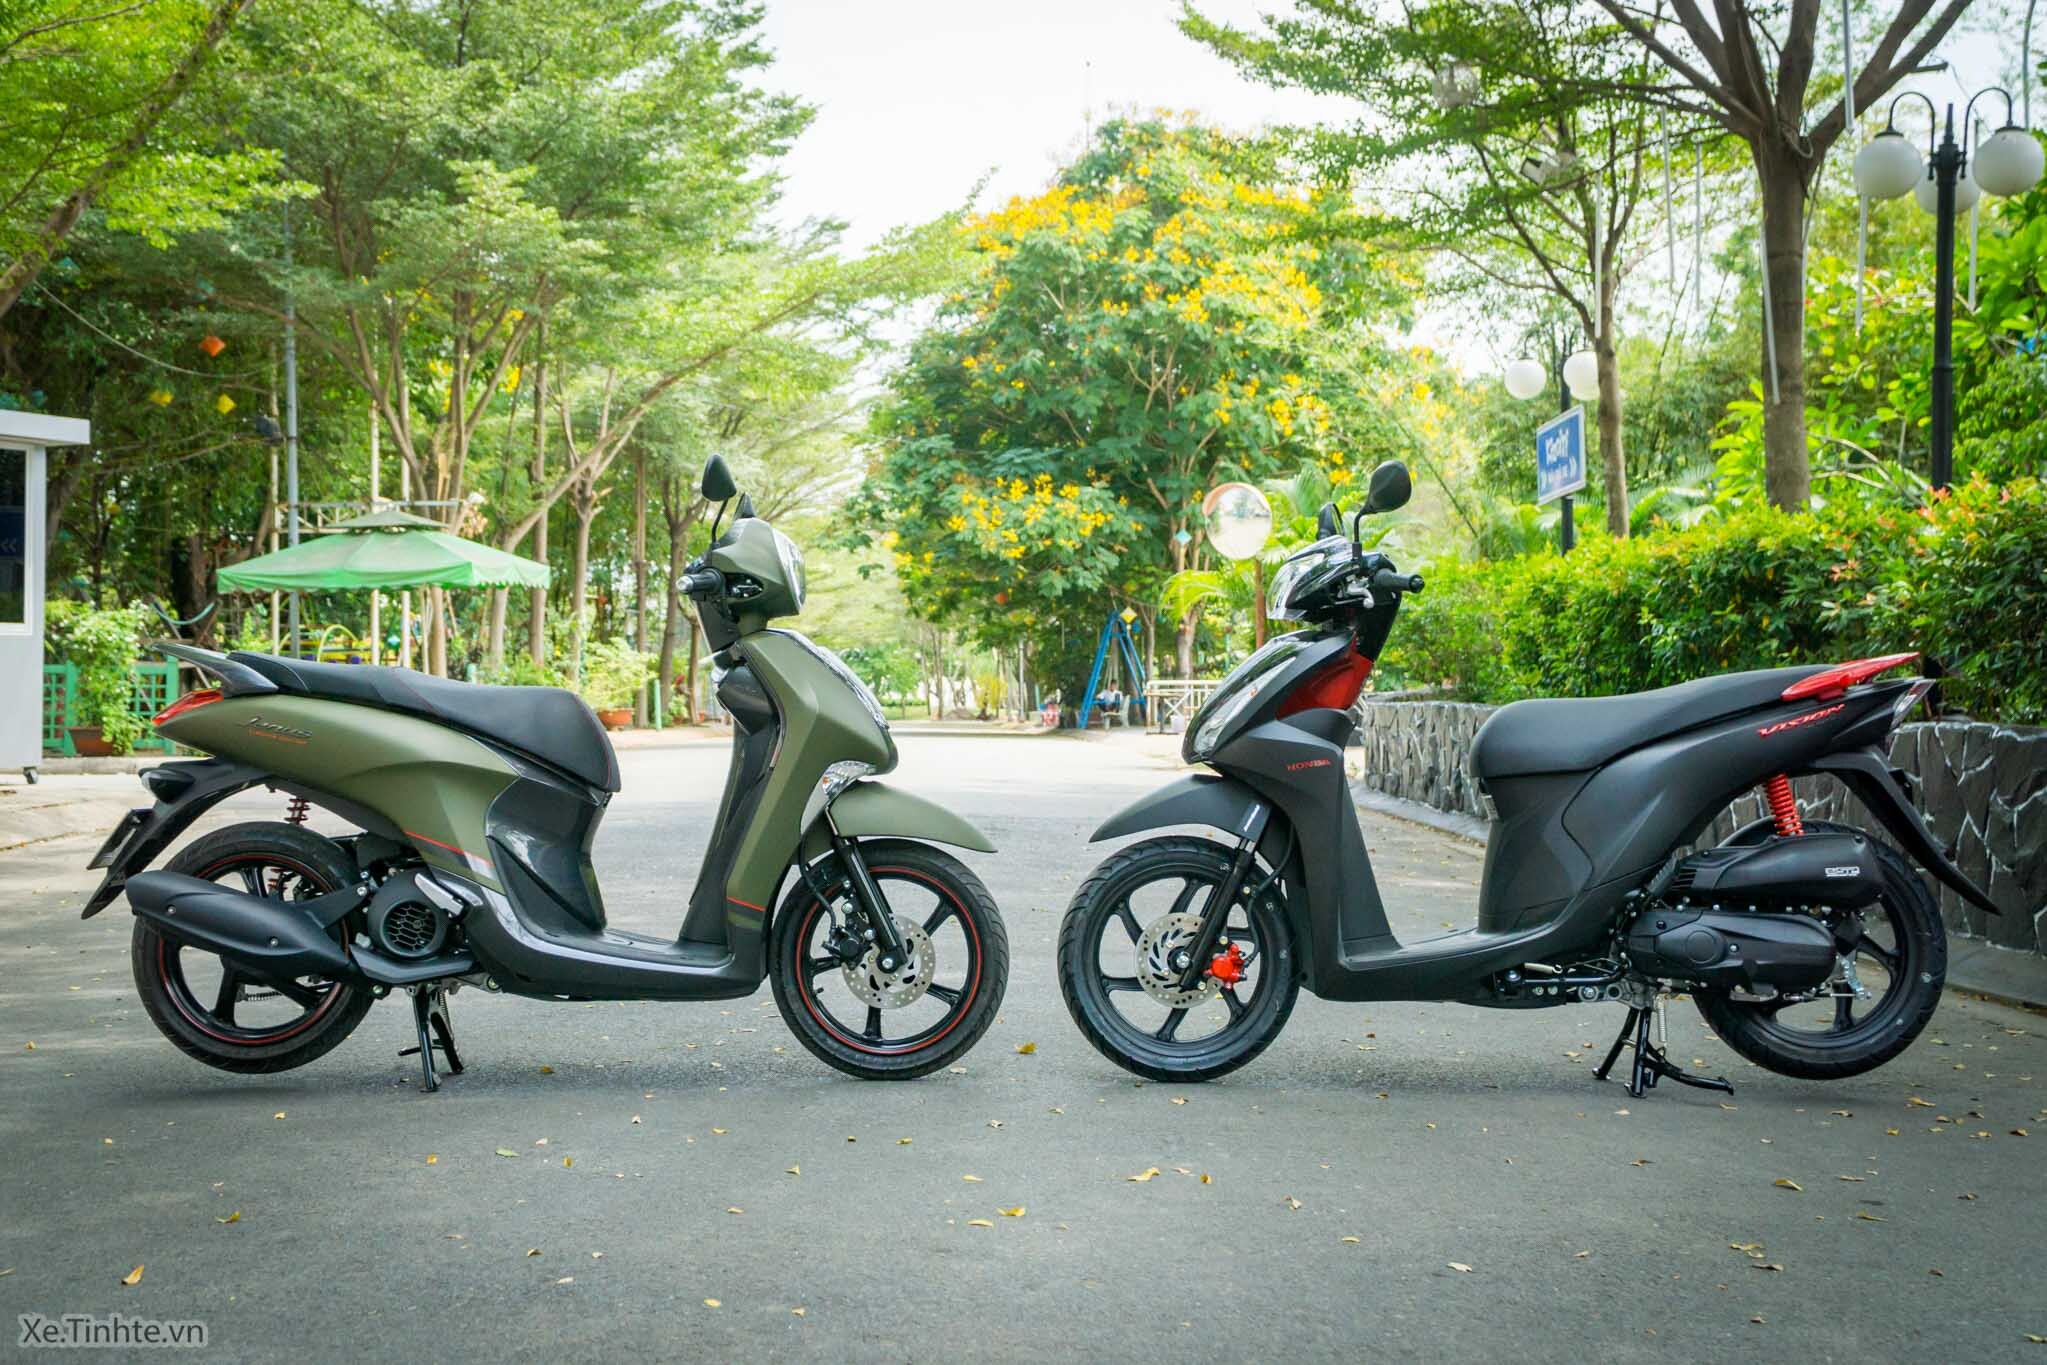 Tiếp tục giảm giá mạnh chiếc xe máy sang chảnh này đang chạm đáy giá  thấp kỷ lục tại Việt Nam